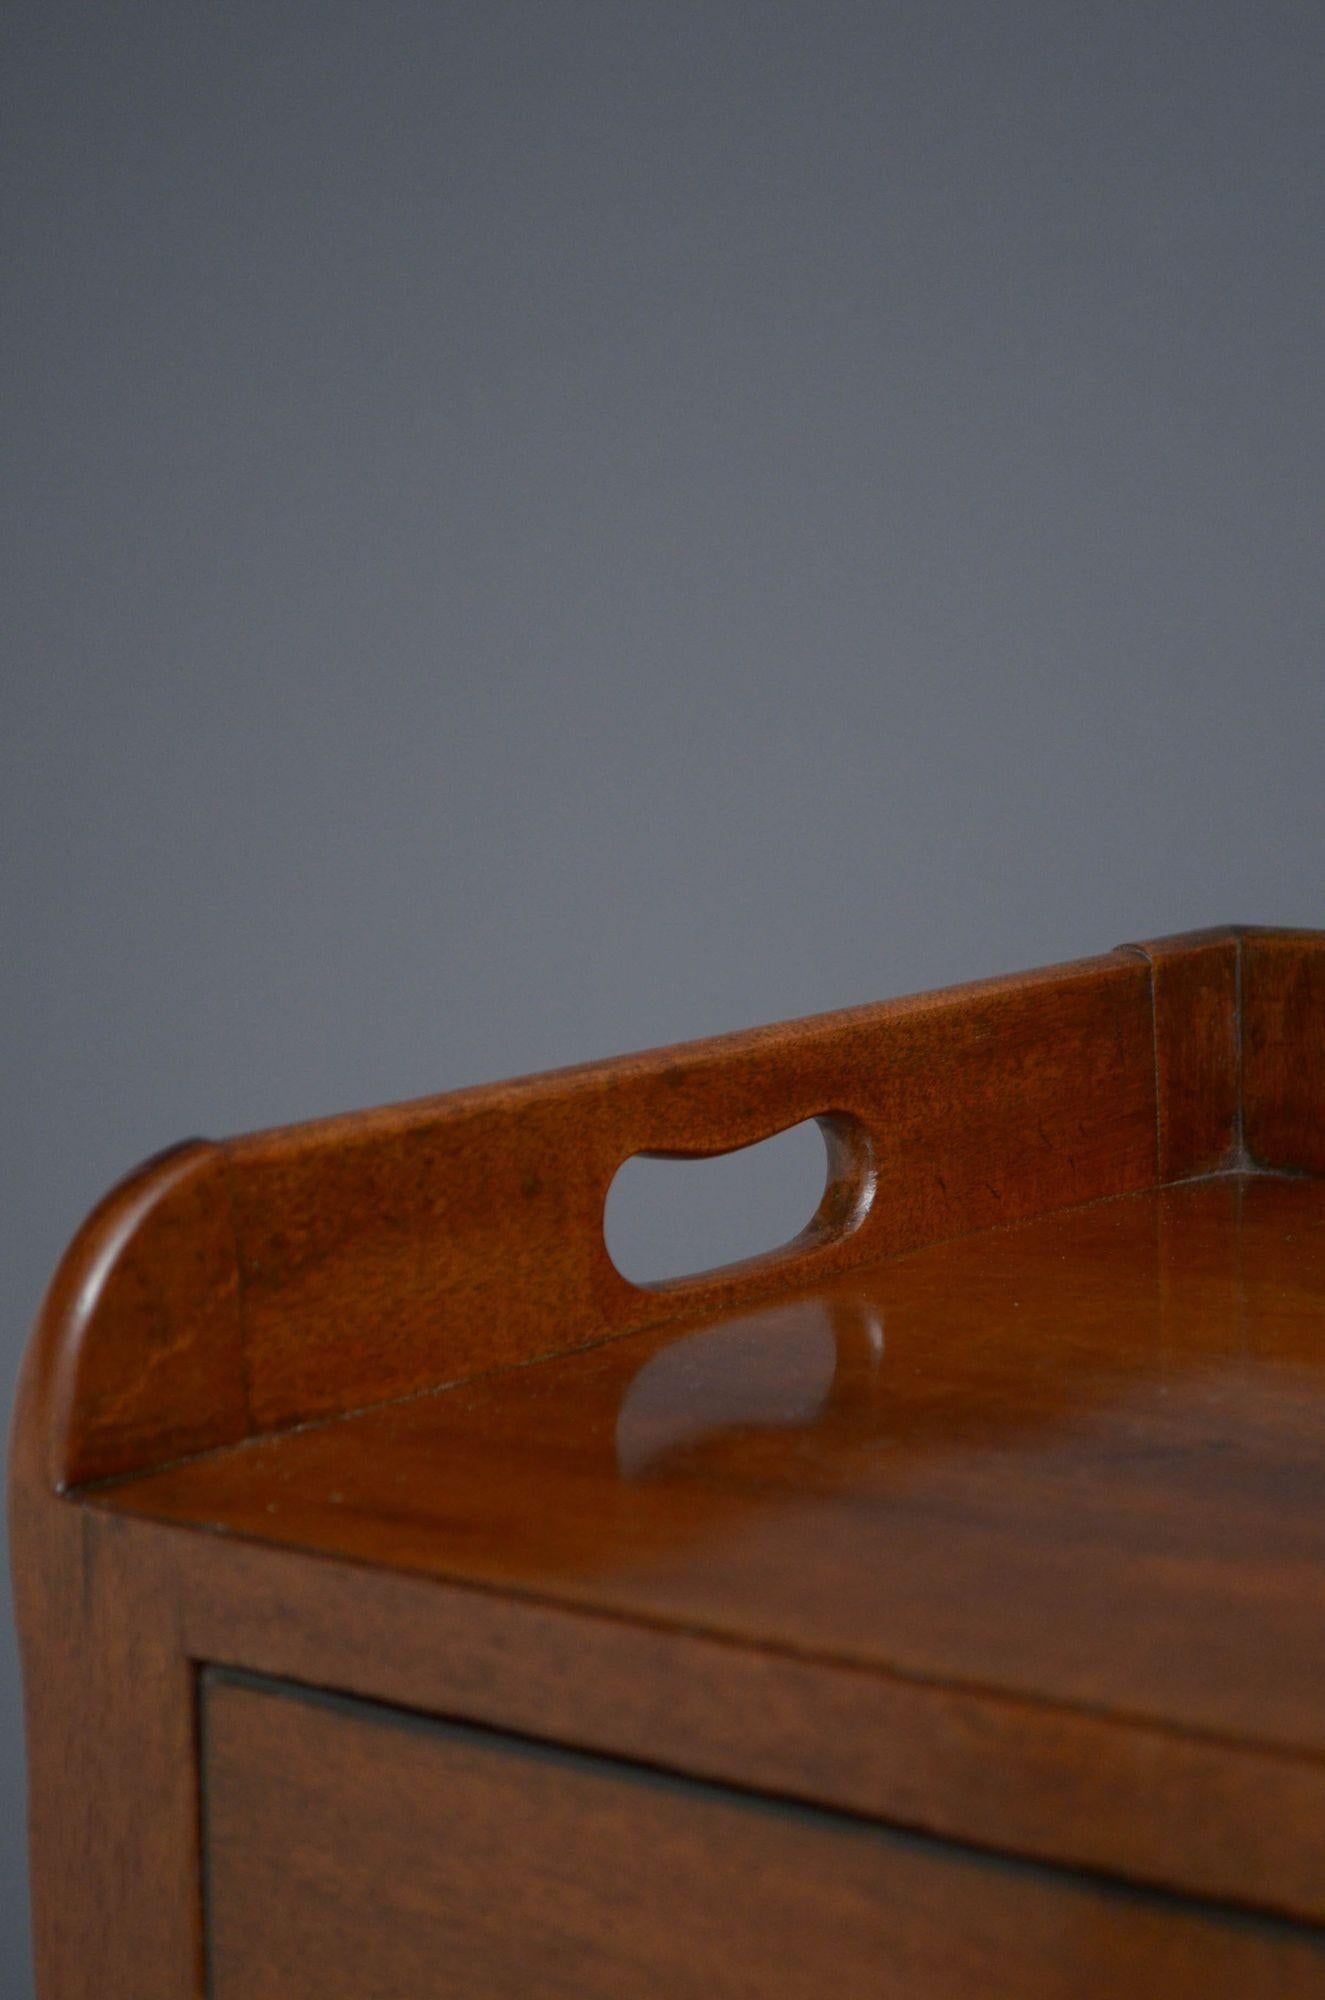 Sn5250 Meuble de chevet Régence en acajou, avec un plateau au-dessus d'une porte de cabinet avec un bord incrusté de cordes et une poignée en laiton, le tout reposant sur des pieds tournés, annelés et effilés. Cette ancienne table de chevet est en